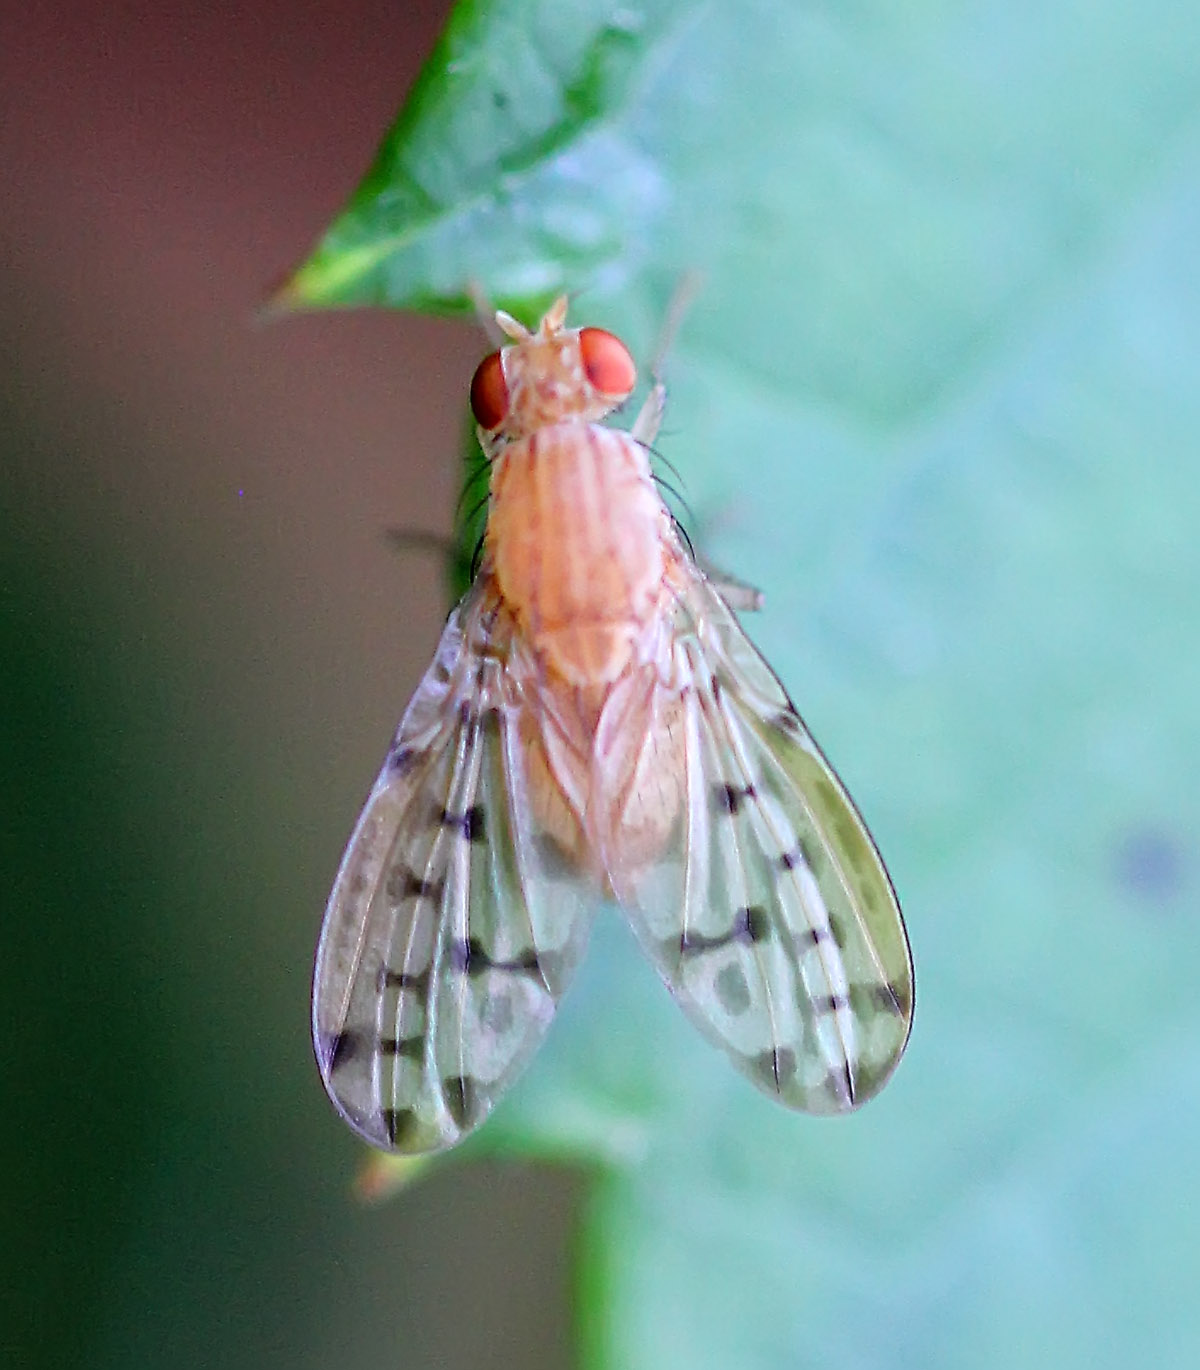 Eusapromyza multipunctata